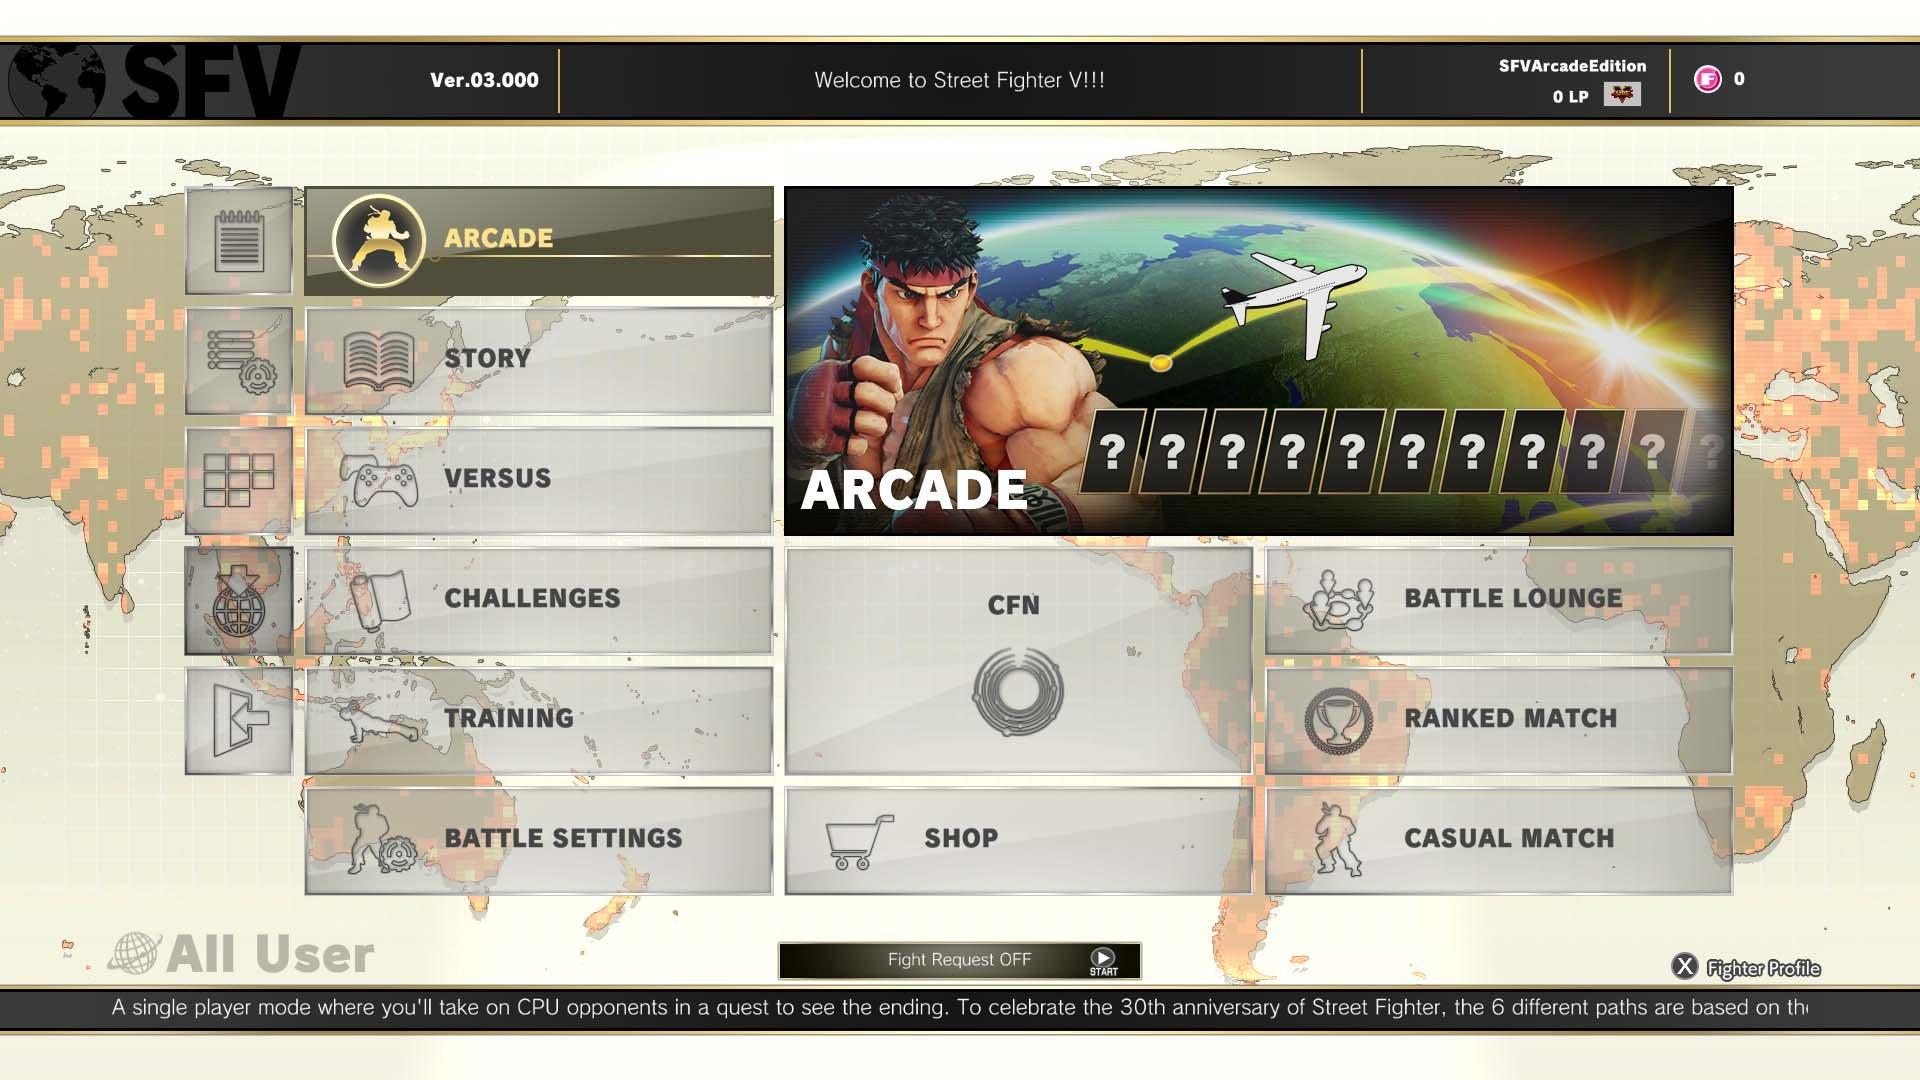 Street Fighter V: Arcade - PlayStation 4 Standard Edition